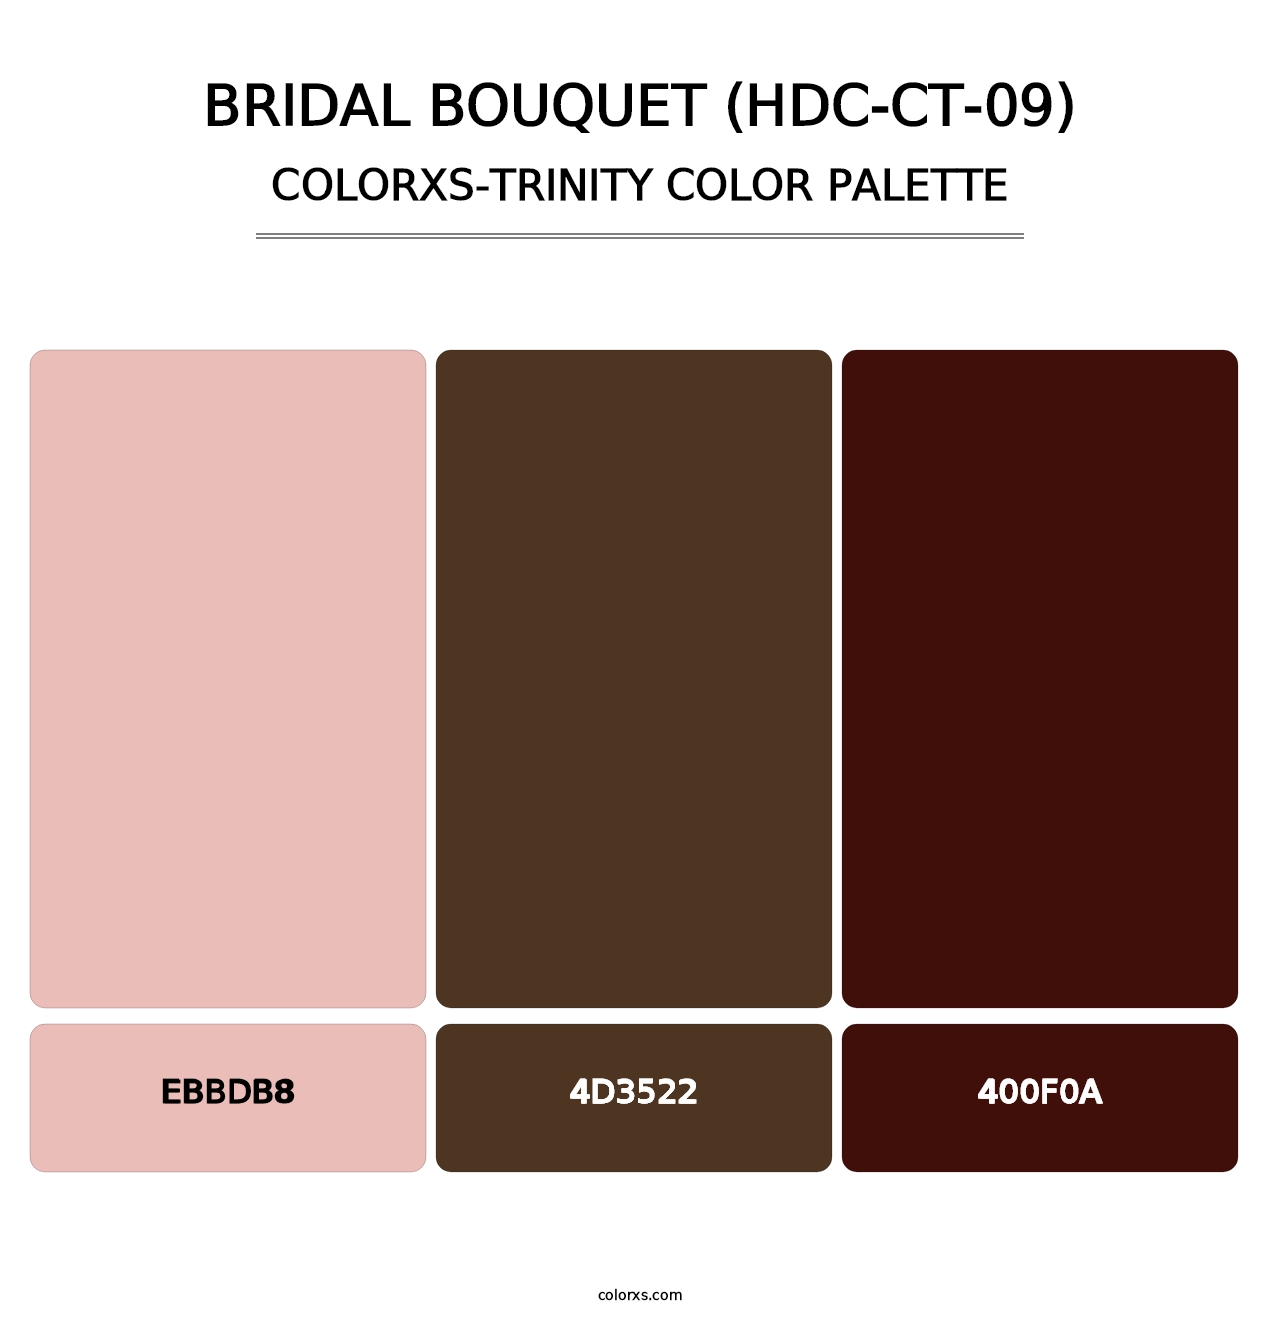 Bridal Bouquet (HDC-CT-09) - Colorxs Trinity Palette